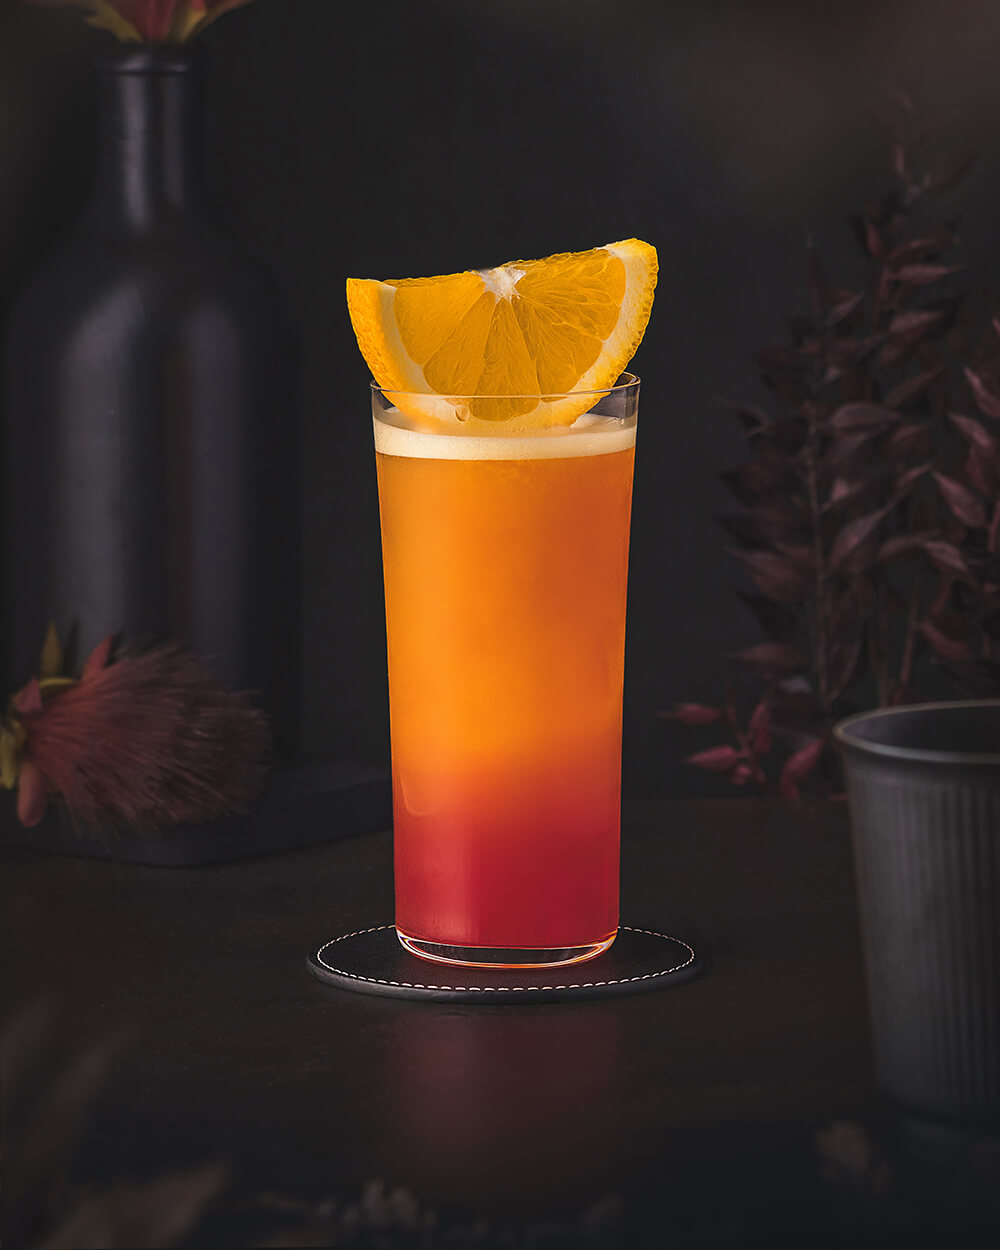 Garibaldi – The true Campari with orange juice